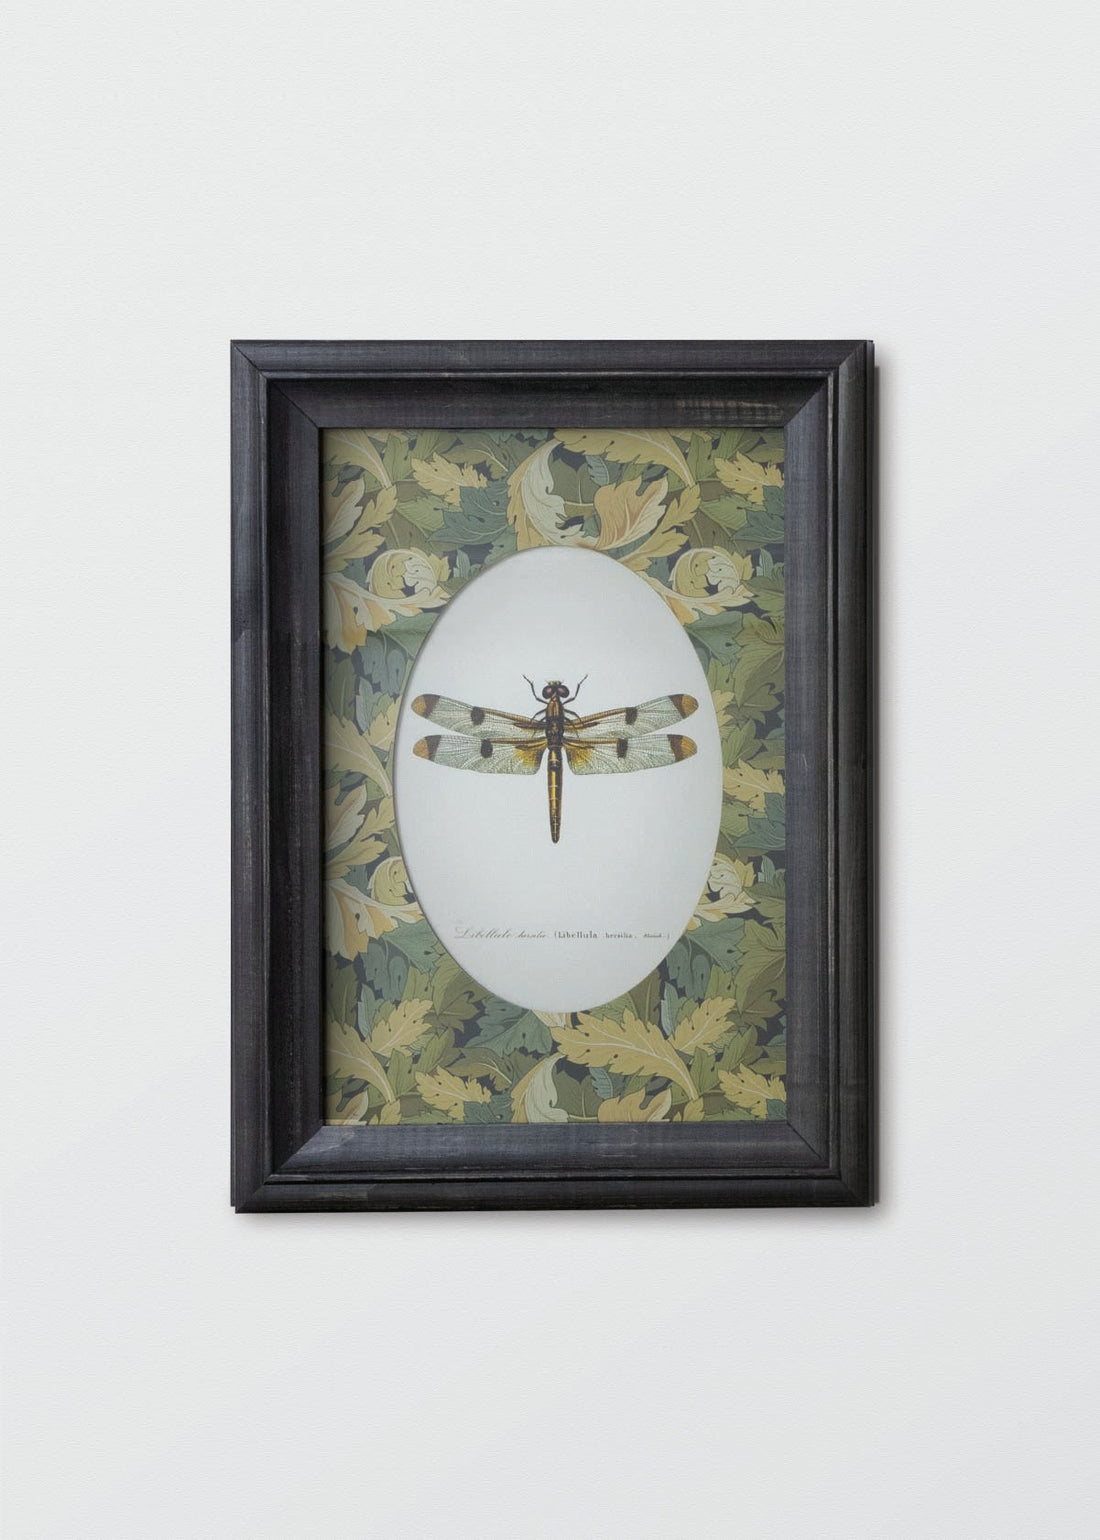 Insectos William Morris - Testimoniaprints